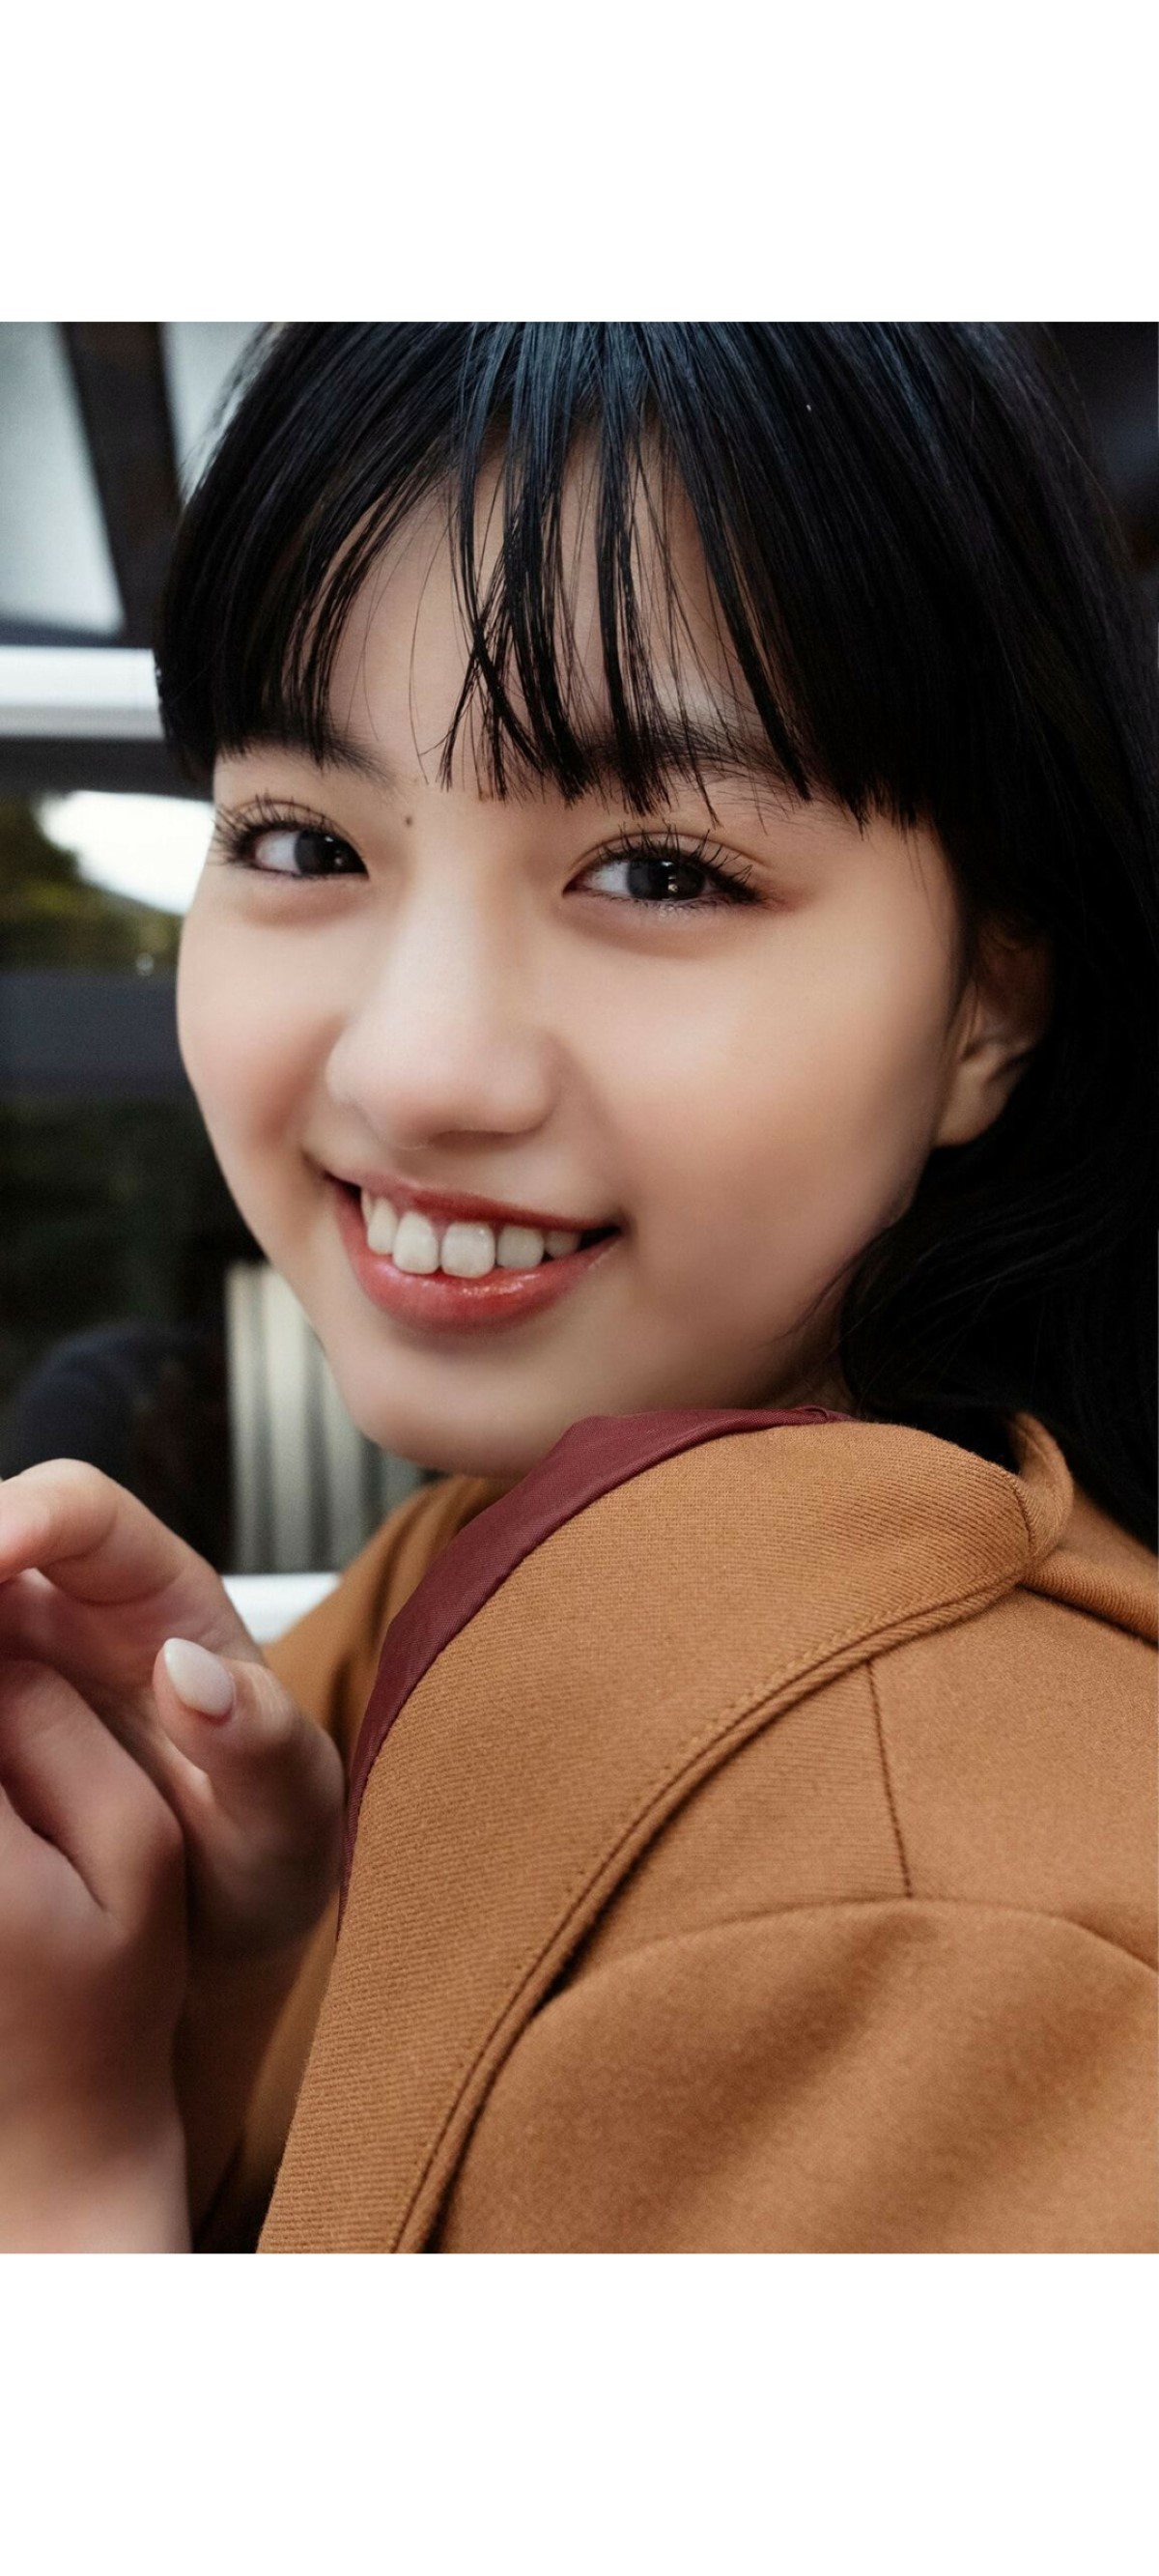 Weekly Photobook 2020 12 07 Noa Tsurushima 鶴嶋乃愛 A natural actress 生まれながらにして女優 0010 5816491004.jpg